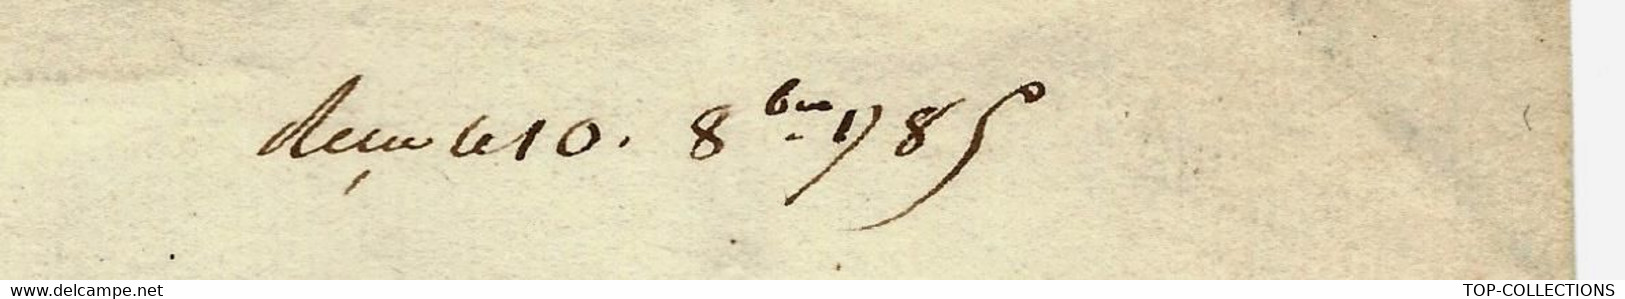 1785 De Cohenhague Danemark COMPAGNIE DANOISE DES INDES COPENHAGUE Lettre Signée Pour FOACHE LE HAVRE - Historical Documents